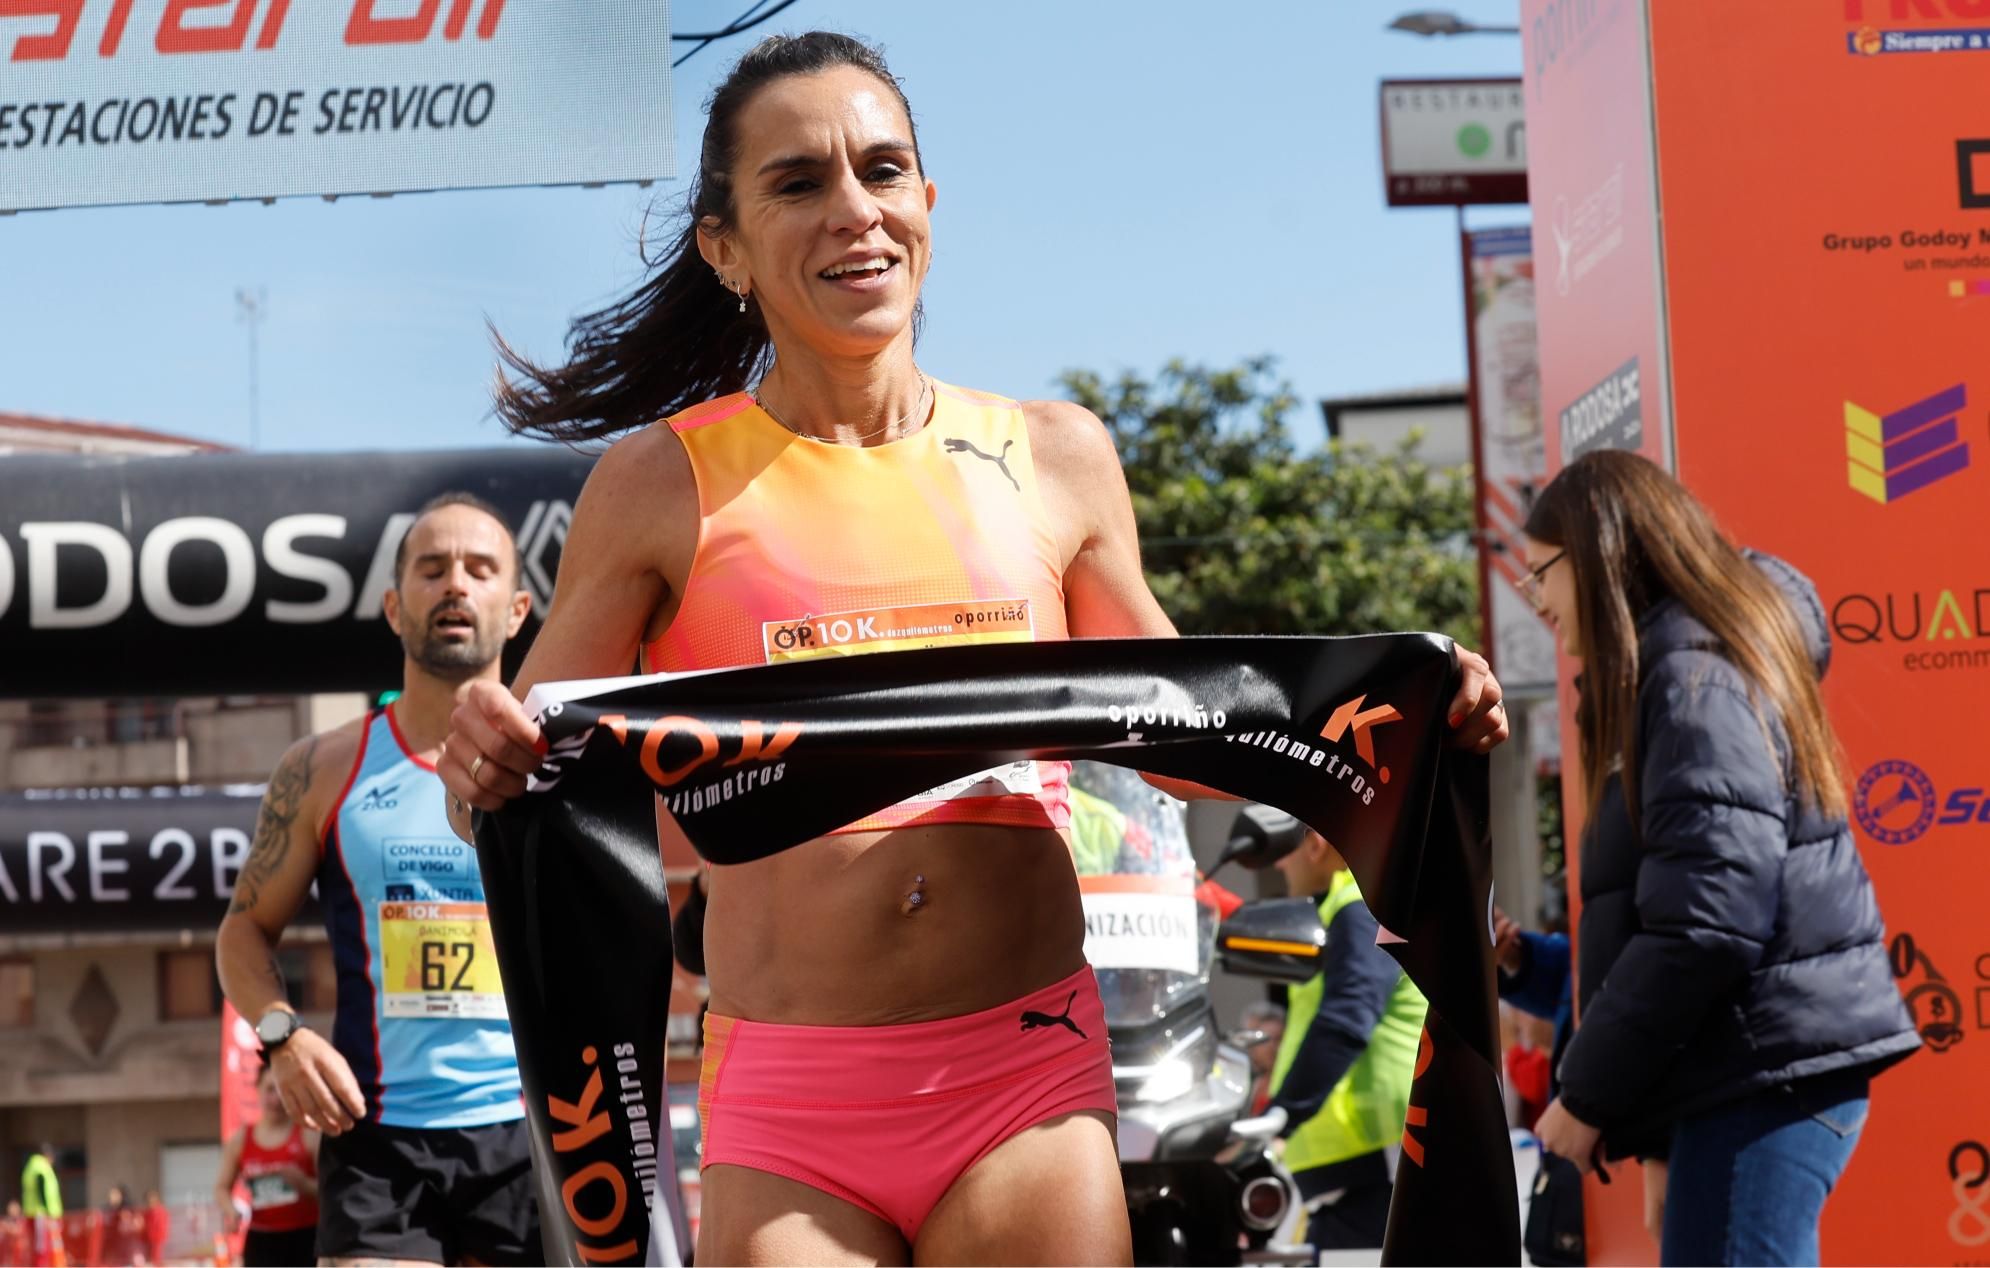 Ester Navarrete y El Mehdi El Nabaoui lideran la carrera O Porriño 10K